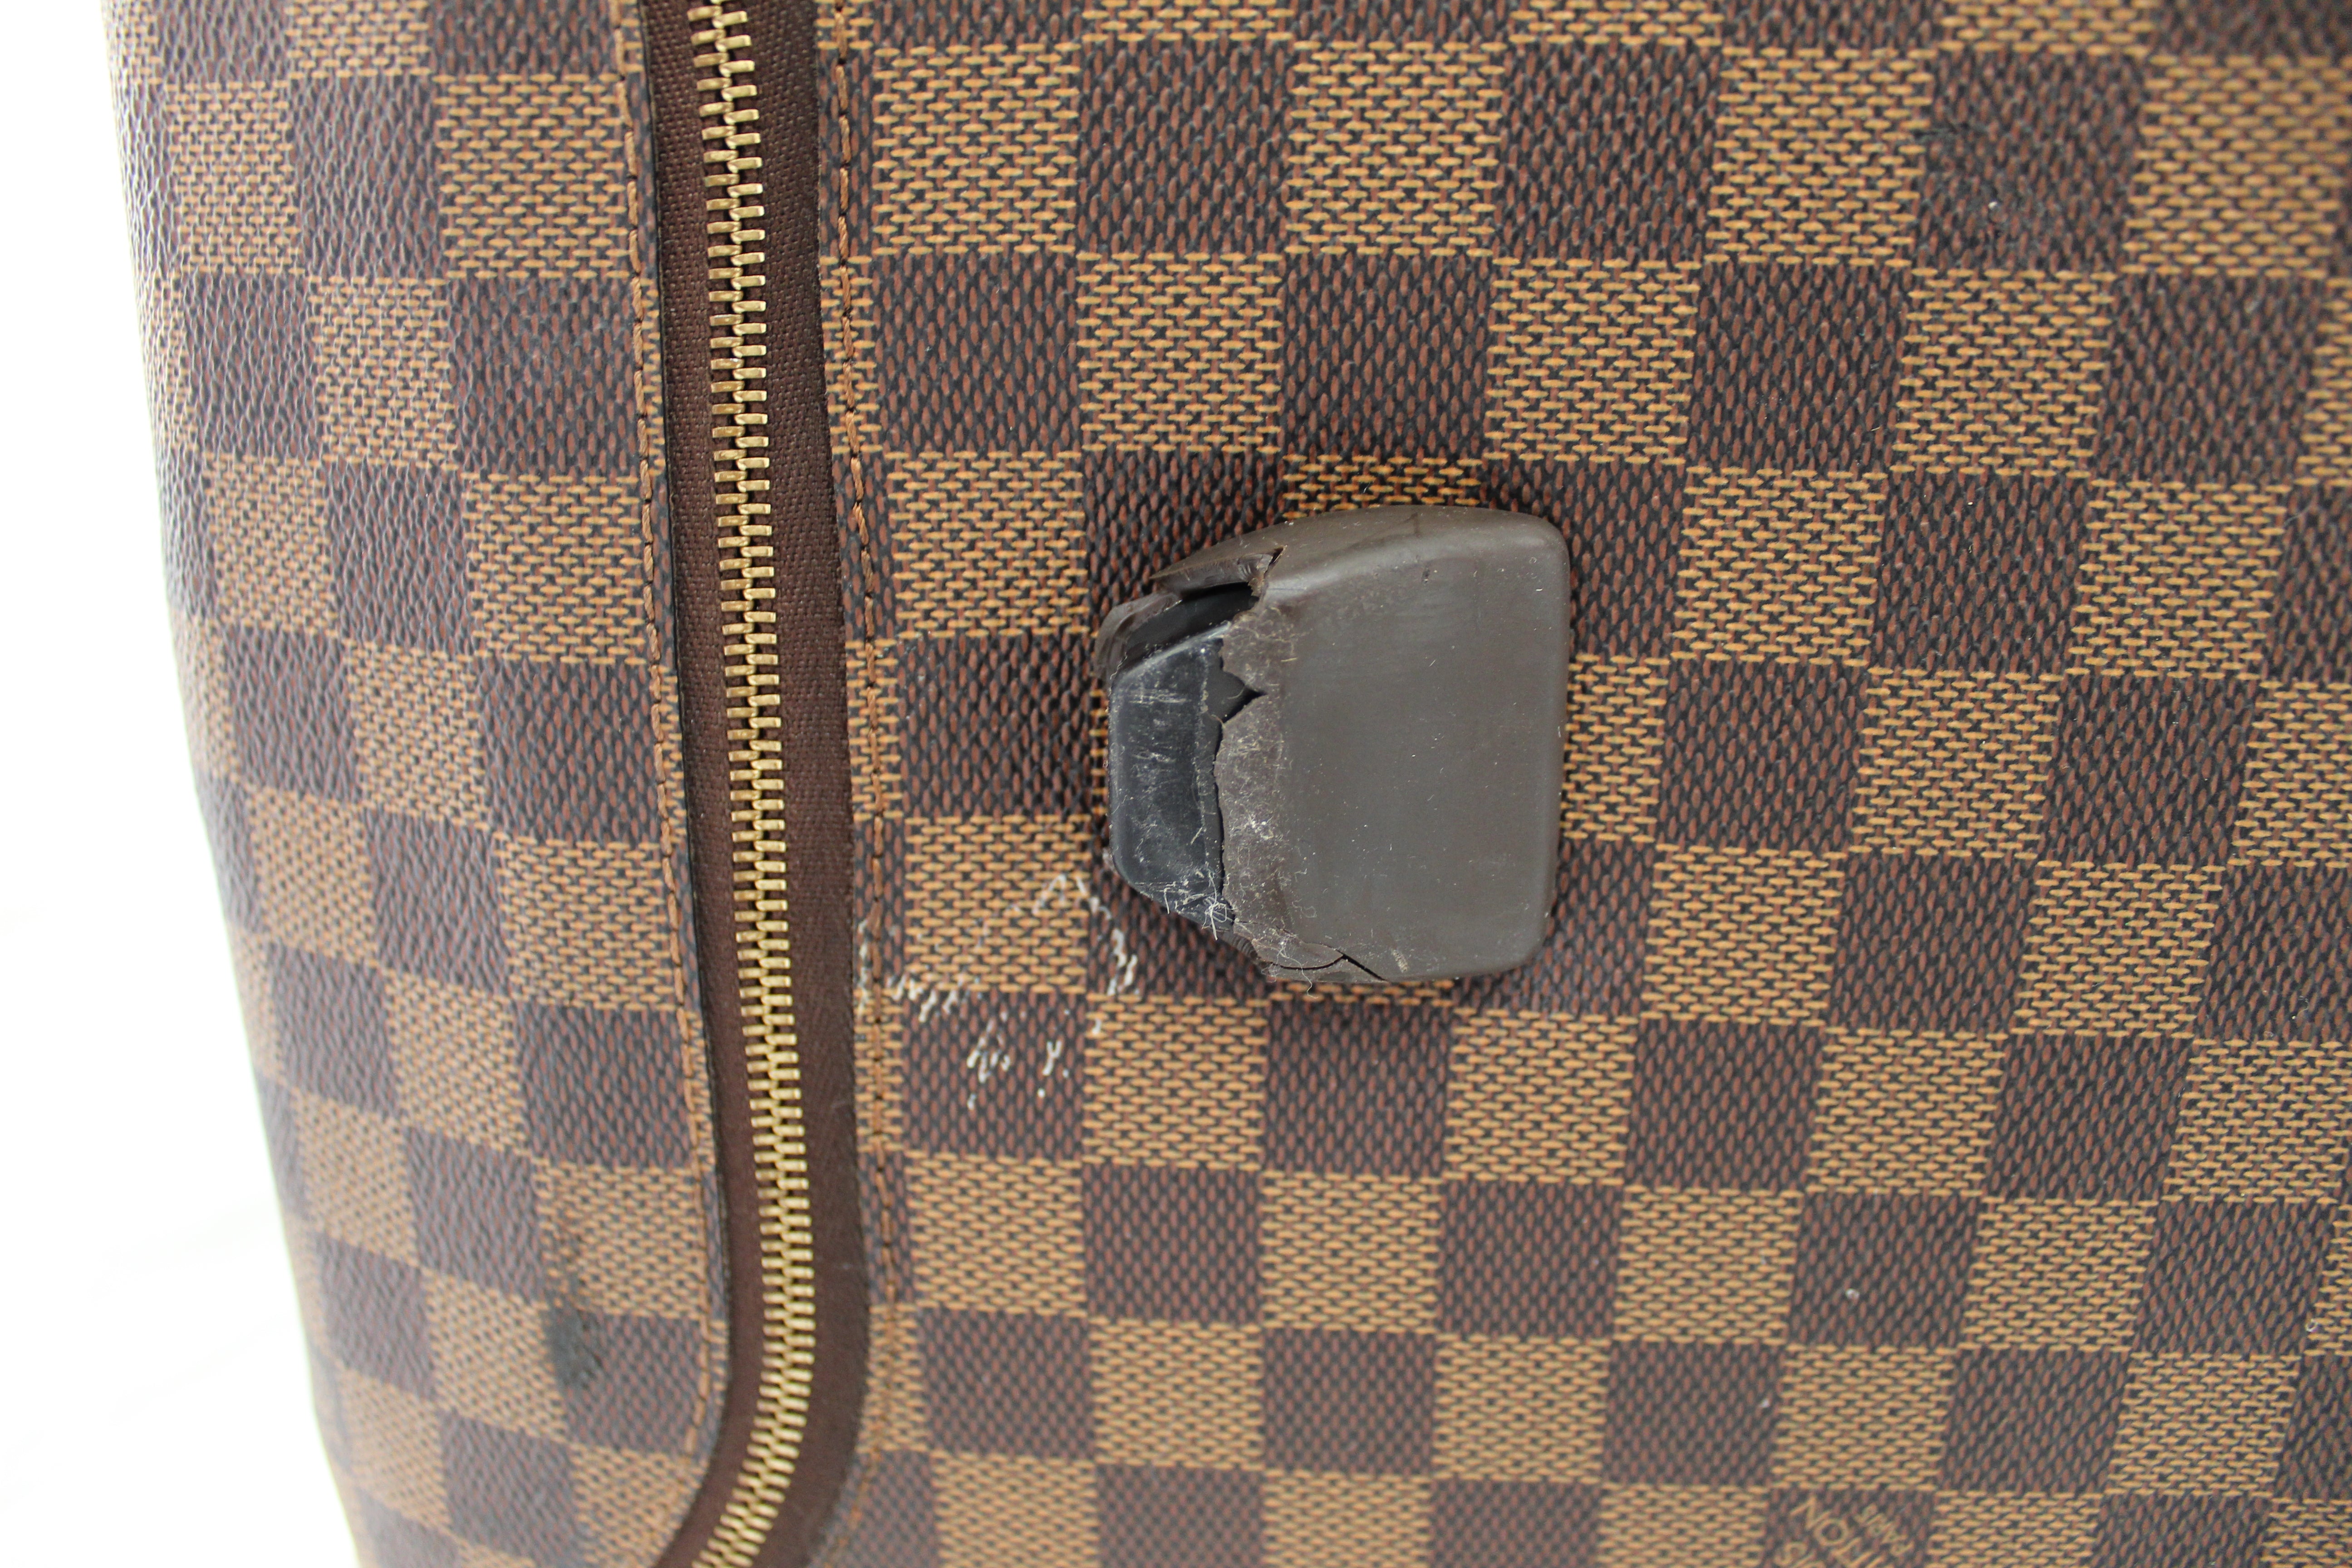 Authentic Louis Vuitton Damier Ebene Neo Eole 50 Suitcase – Paris